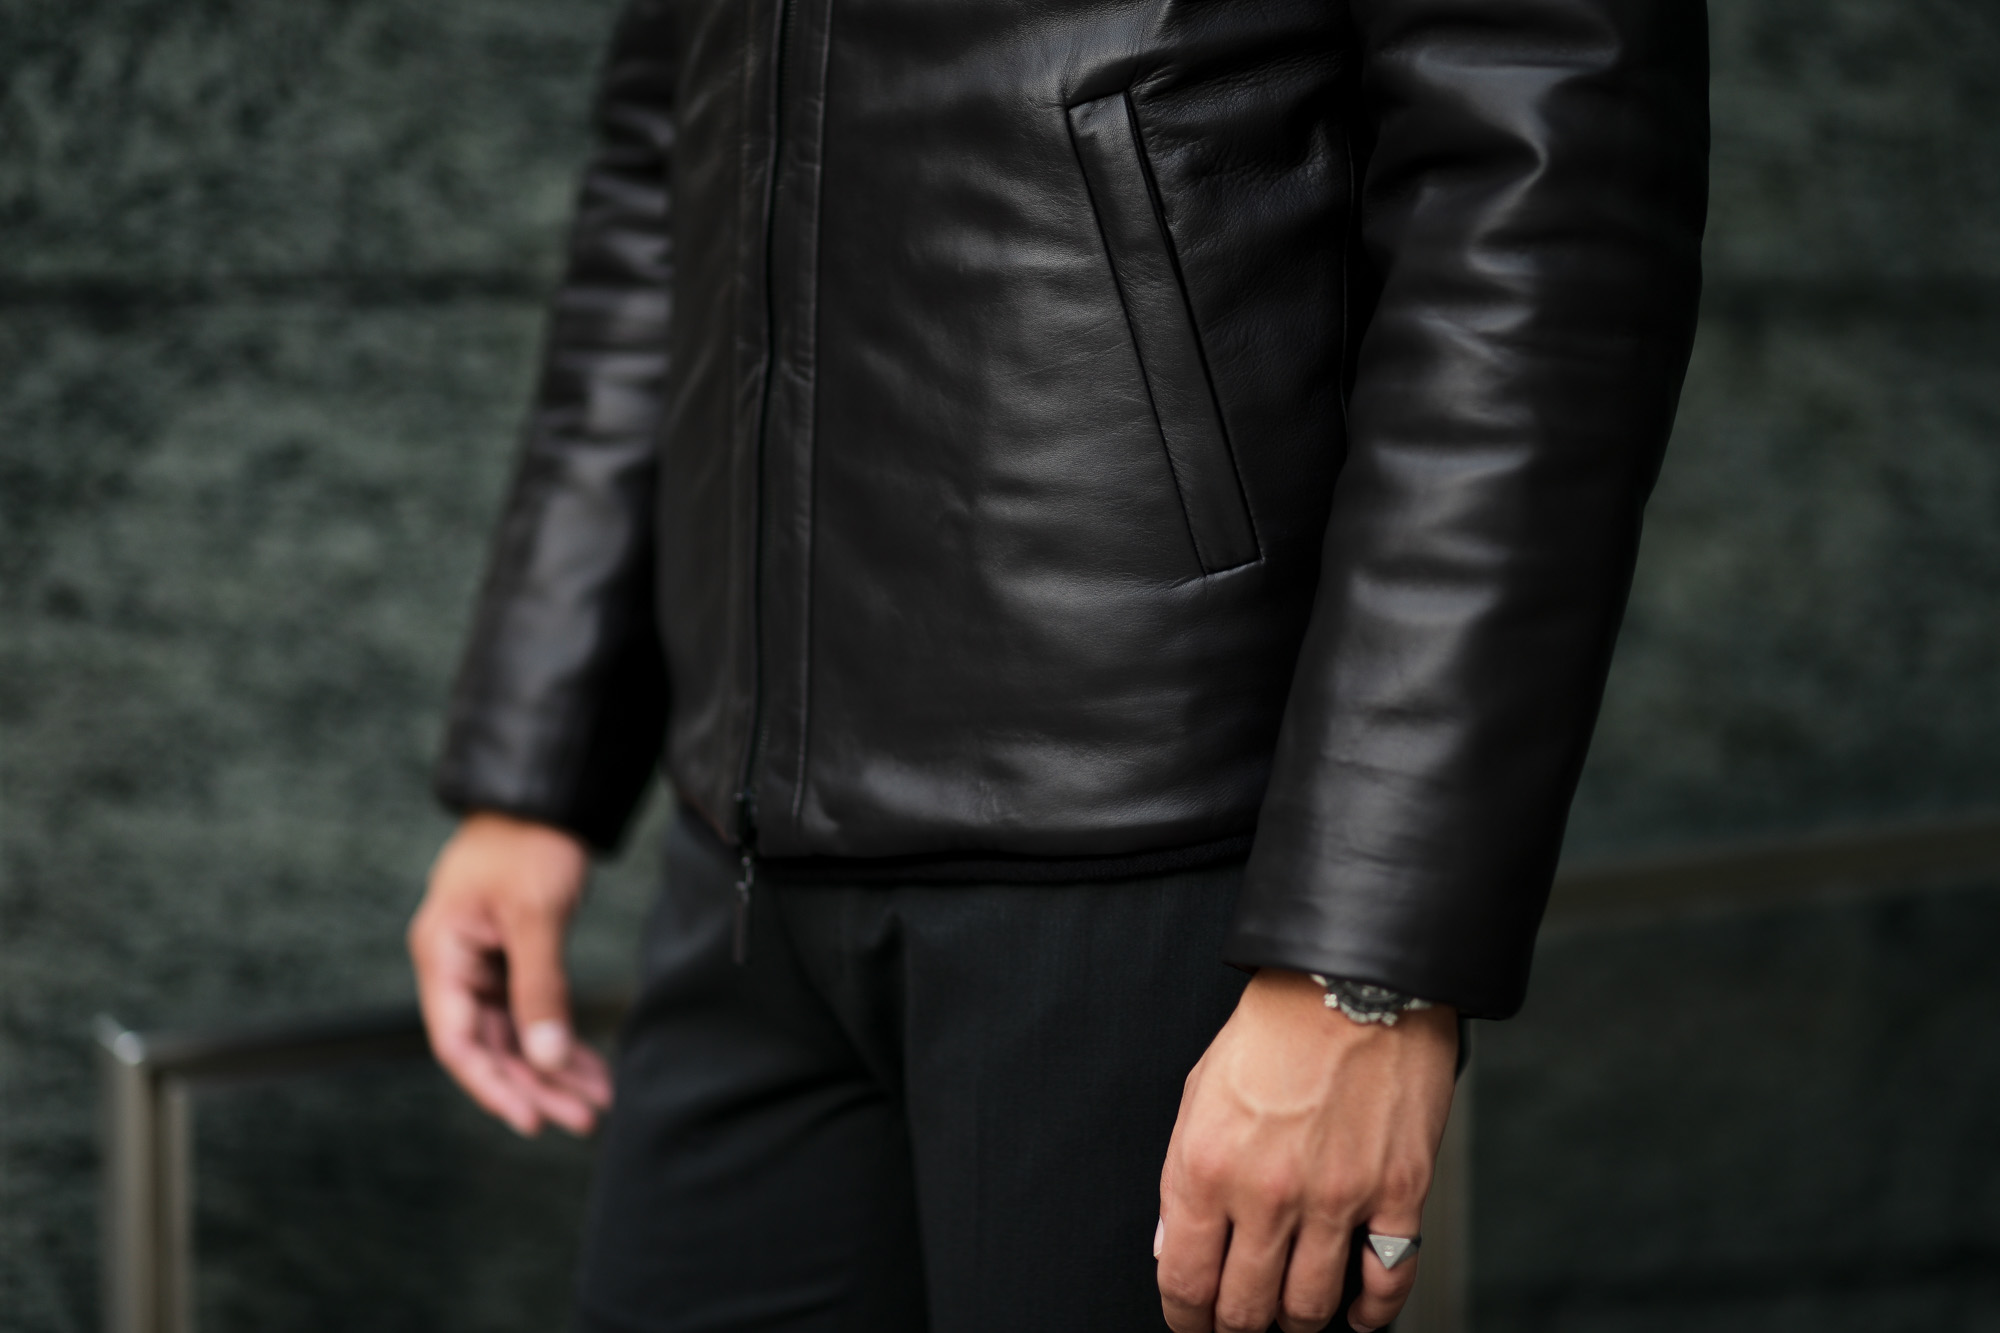 ALTACRUNA (アルタクルーナ) Reversible Leather Padded Jacket (リバーシブル レザー パデッド ジャケット) Lamb Leather (ラムレザー) レザー × ナイロン リバーシブル ジャケット NERO (ブラック・0010) Made in italy (イタリア製) 2020 秋冬新作 愛知 名古屋 Alto e Diritto アルトエデリット